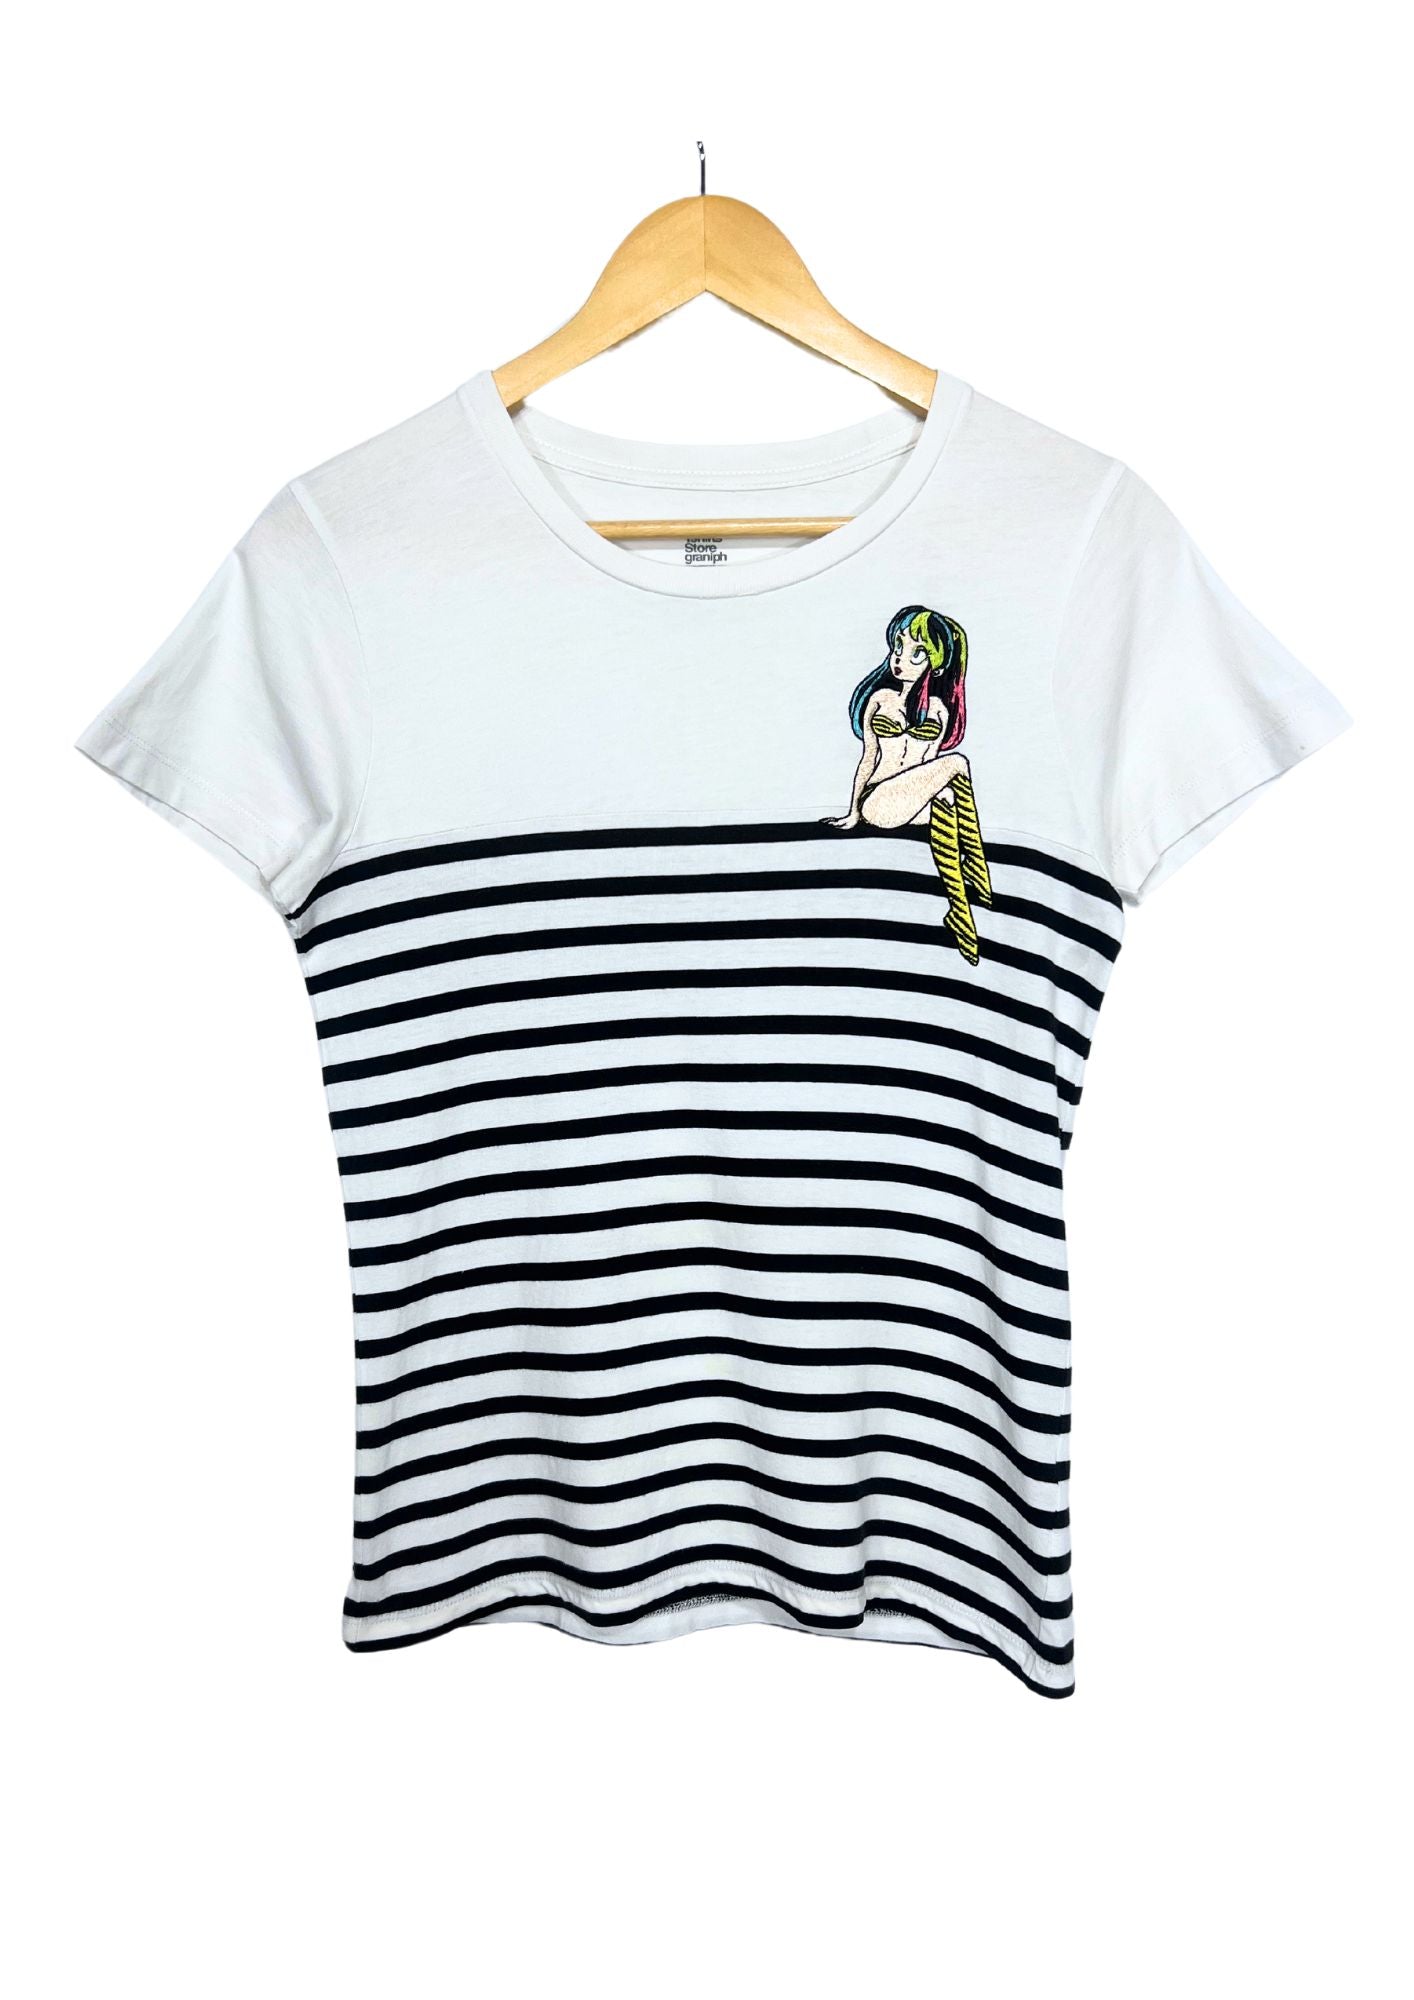 2016 Urusei Yatsura x Graniph Embroidered Lum T-shirt